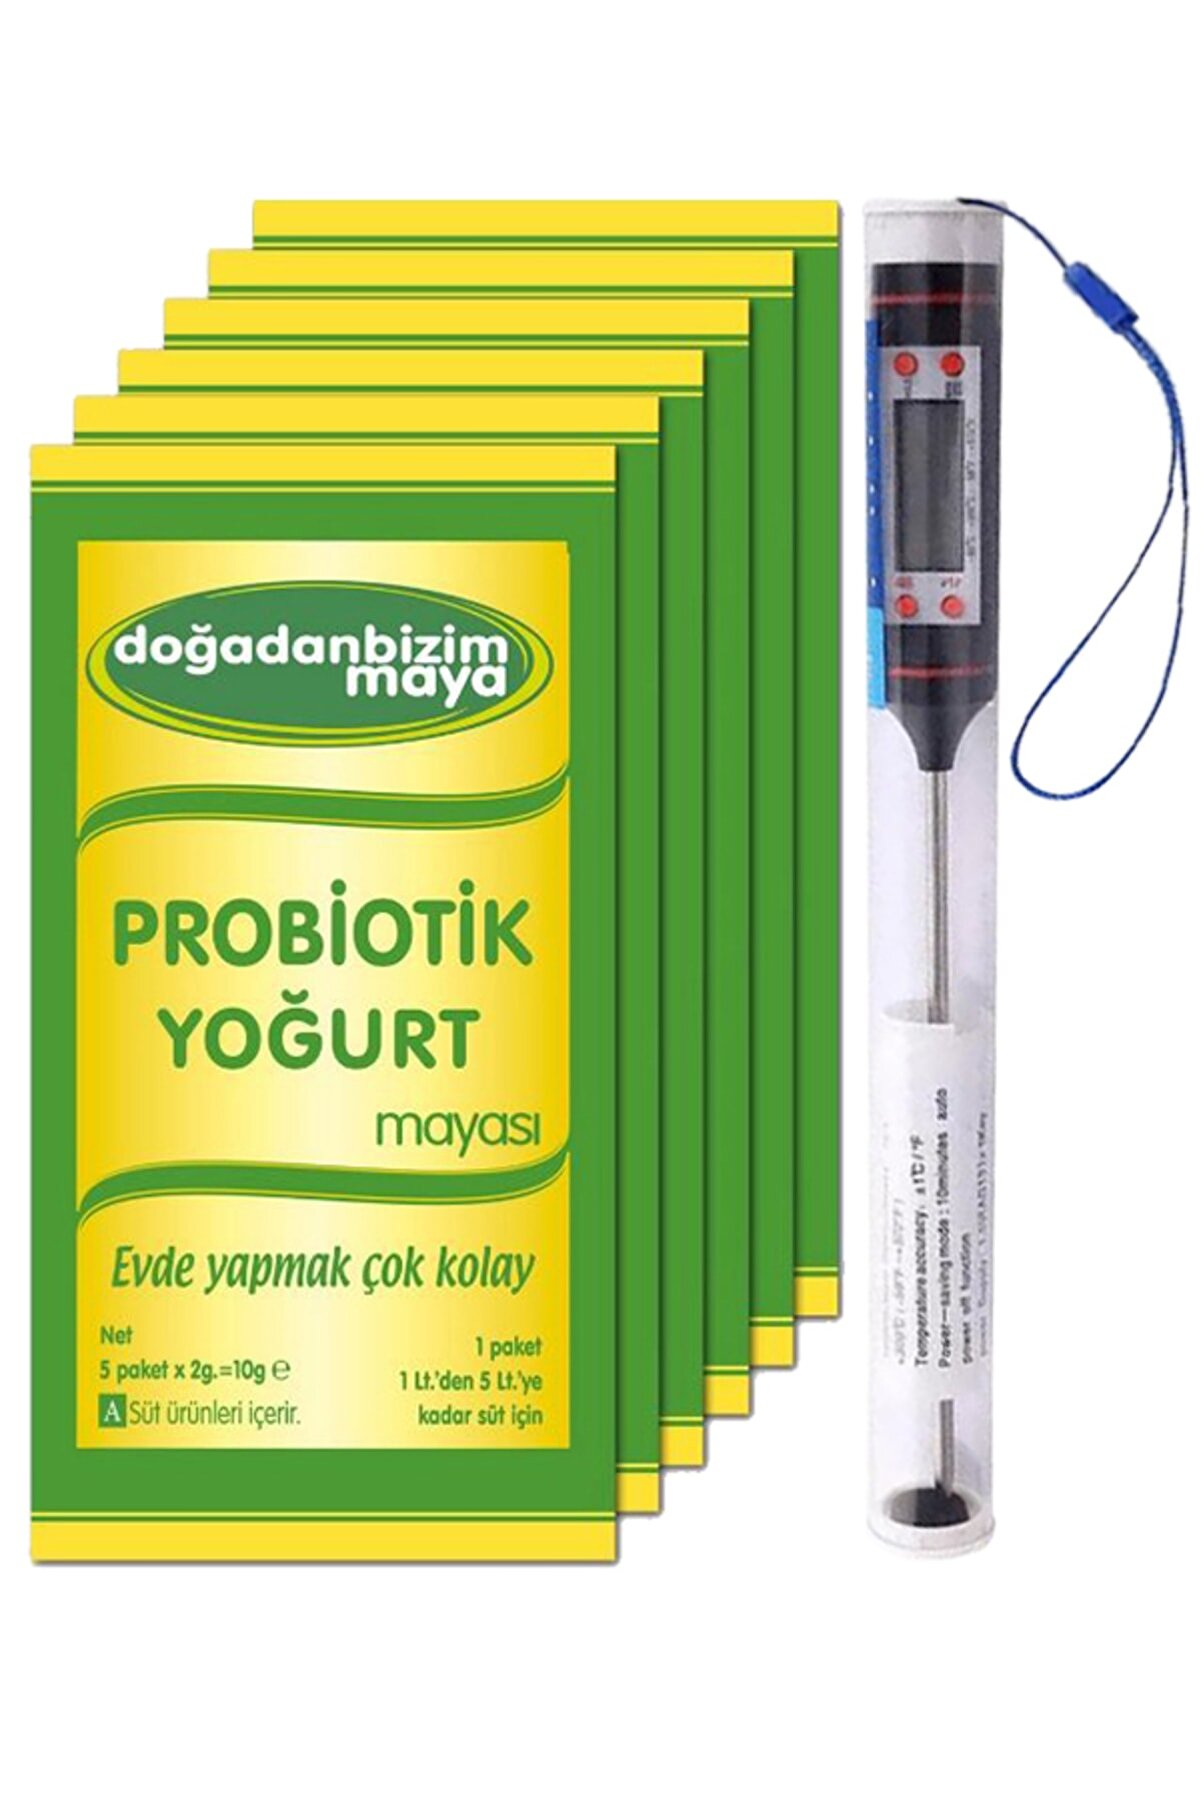 Genel Markalar Probiyotik Yoğurt Mayası 5 Li Paket 6 Kutu - Gıda Termometresi 1 Adet